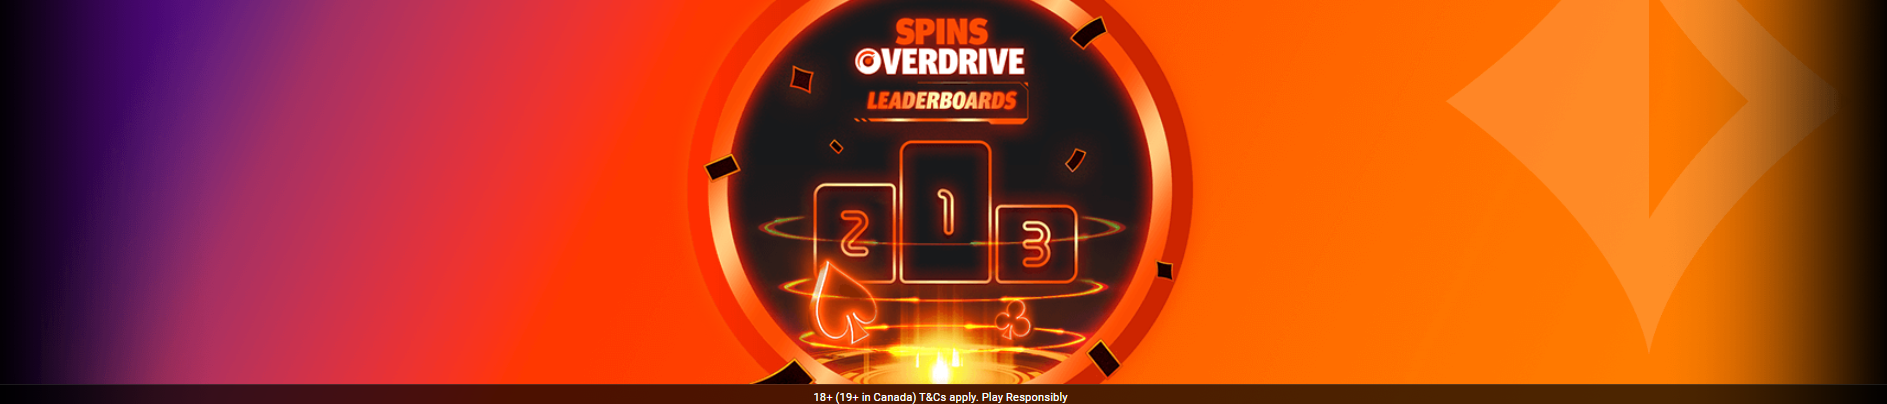 SPINS Overdrive Poker Leaderboards